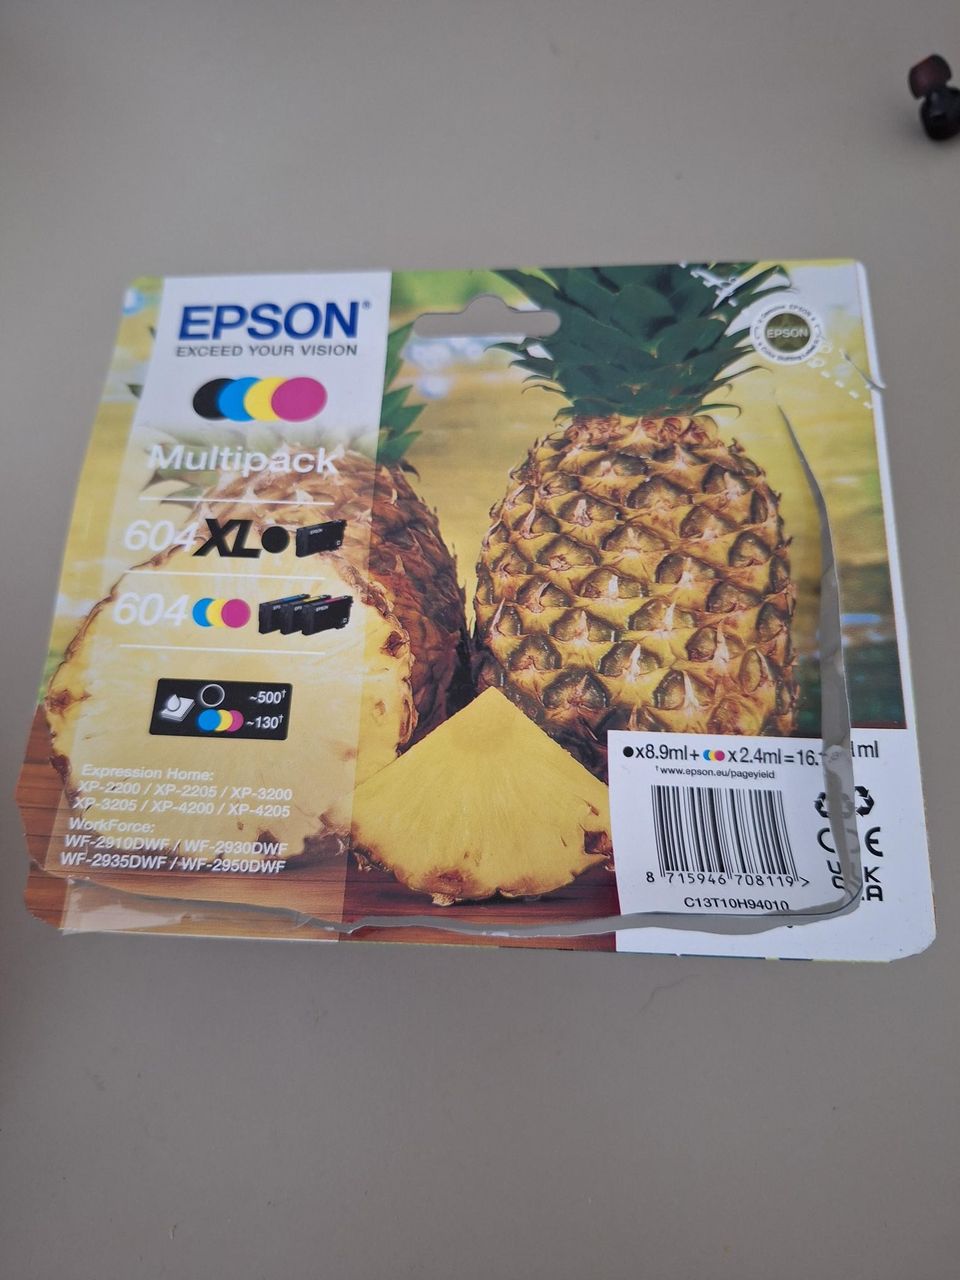 Epson Multipack 604